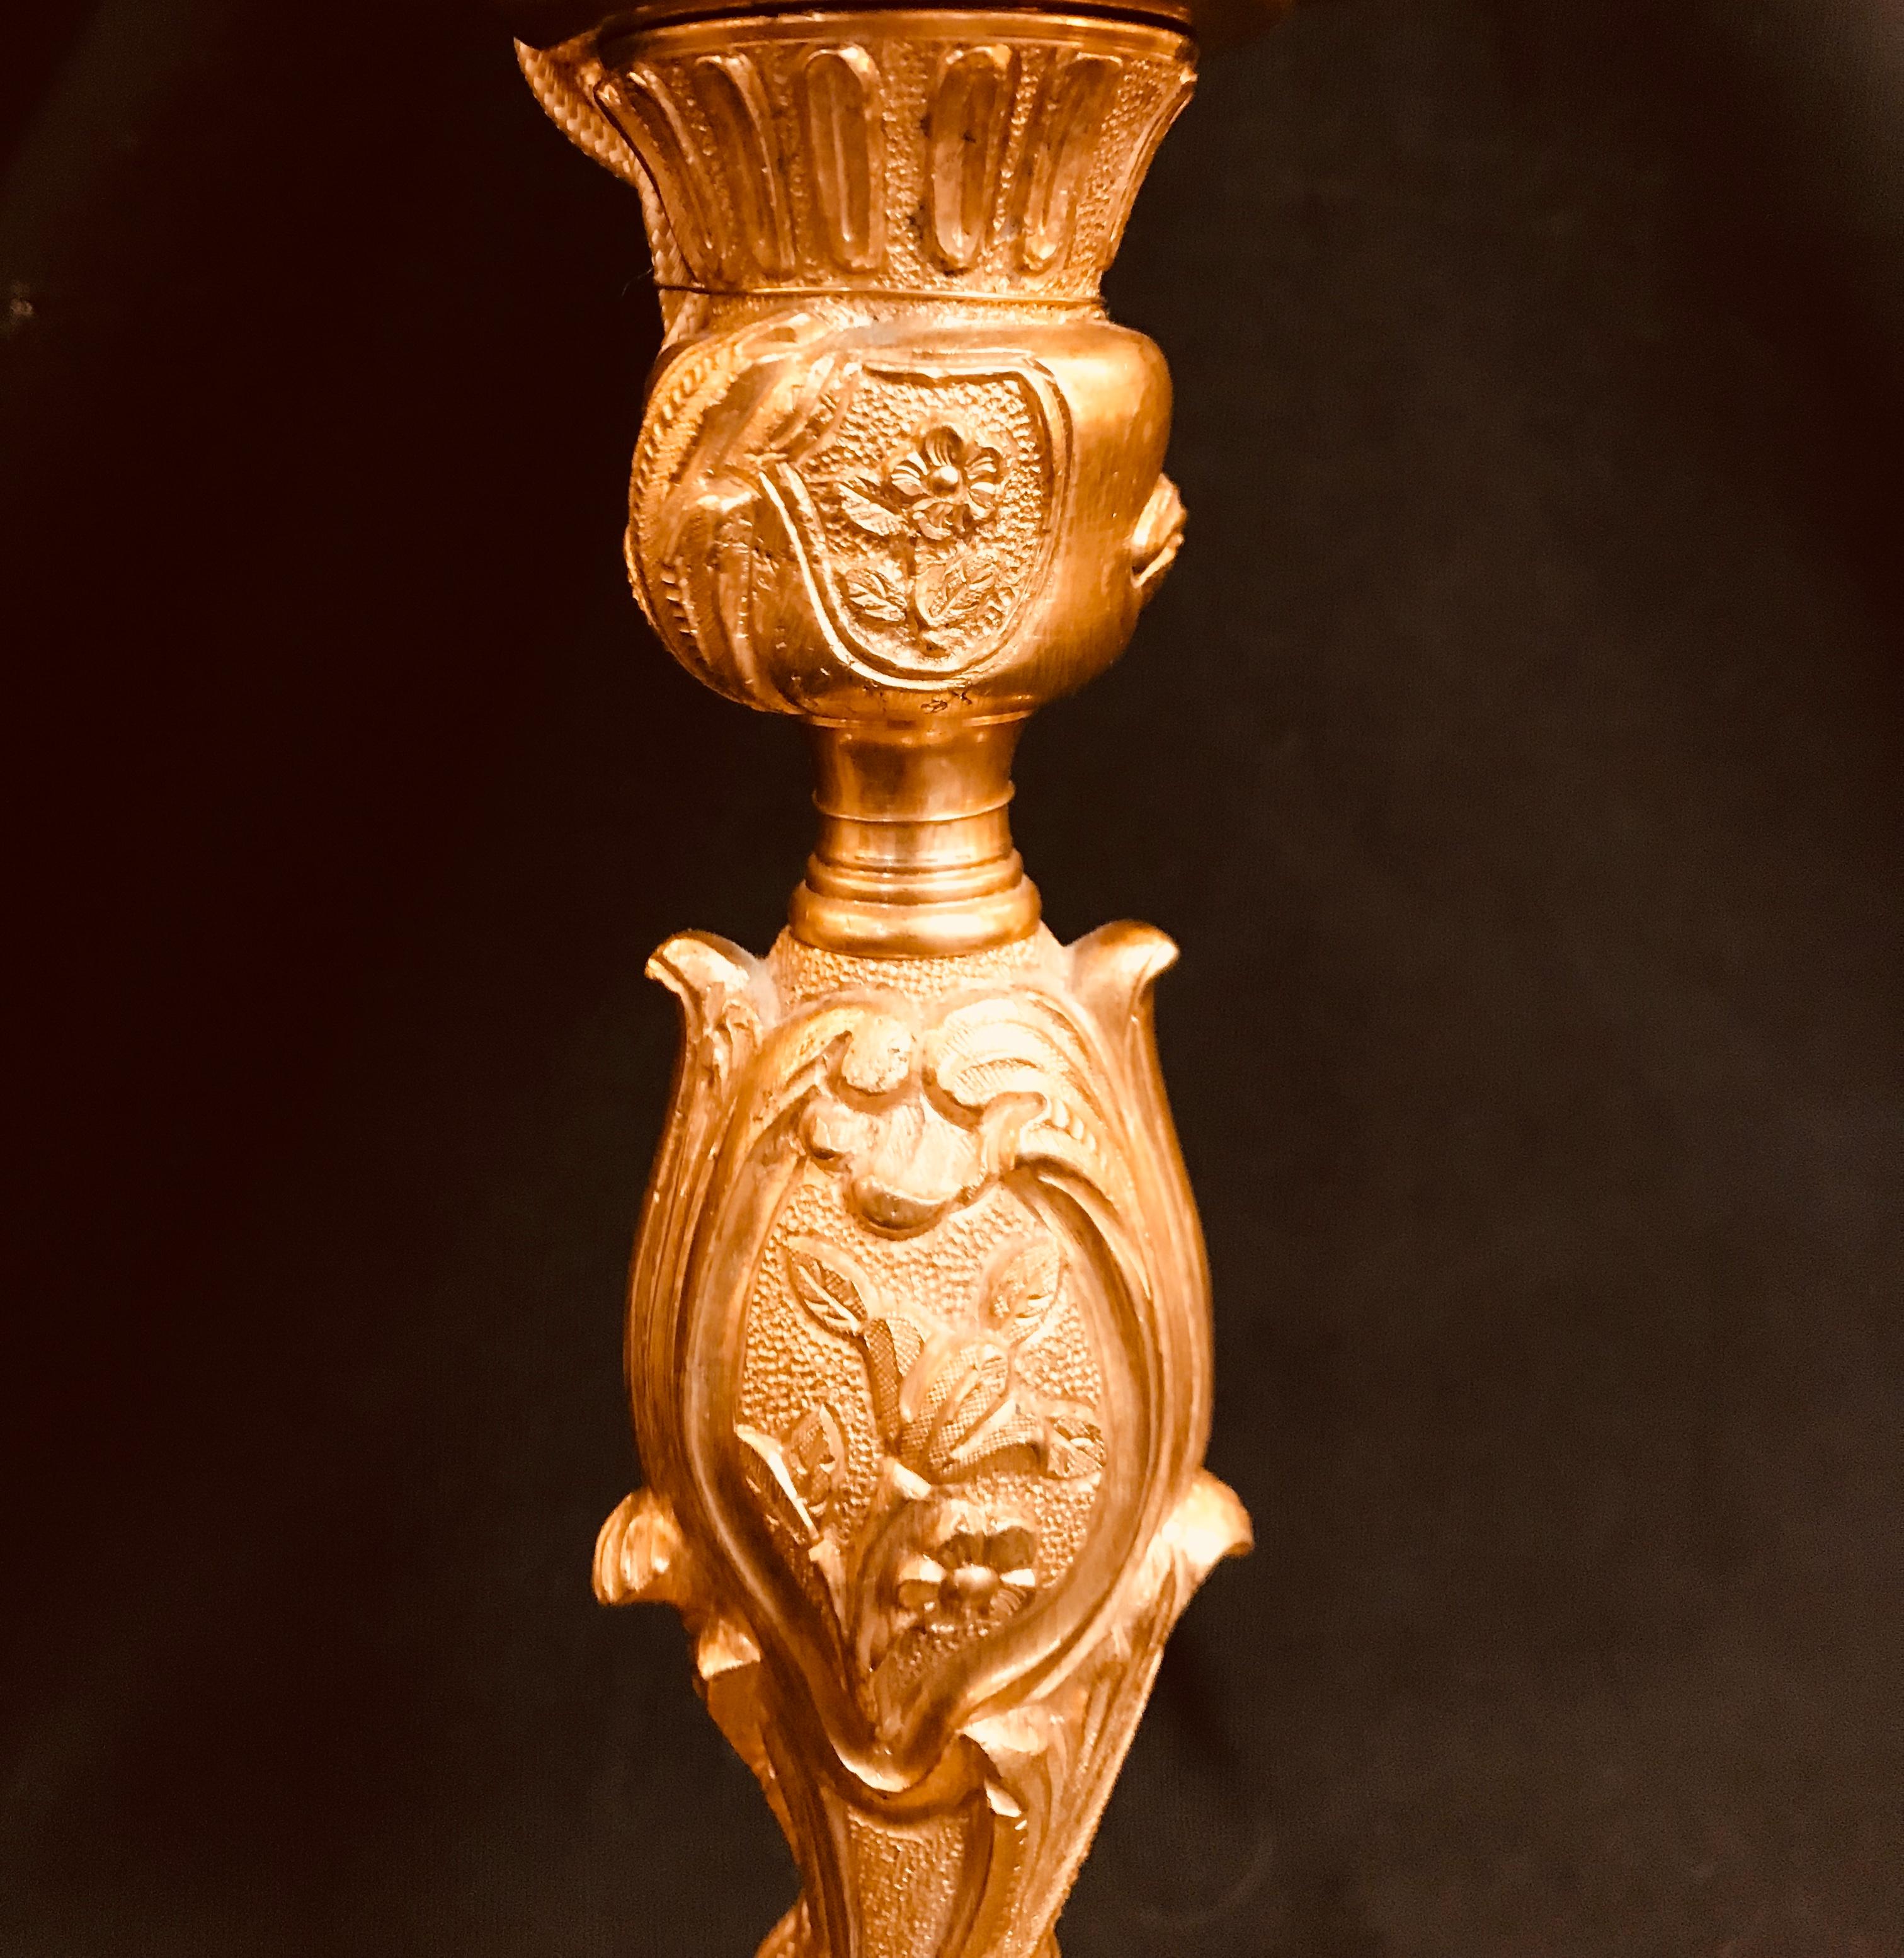 Ce petit candélabre de style Louis XV en bronze doré de Gherardo Degli Albizzi reprend le grand goût de la décoration de la période Rococò. Ainsi, les motifs végétaux sont omniprésents et les formes sont d'une grande élégance et opulence. La tige a